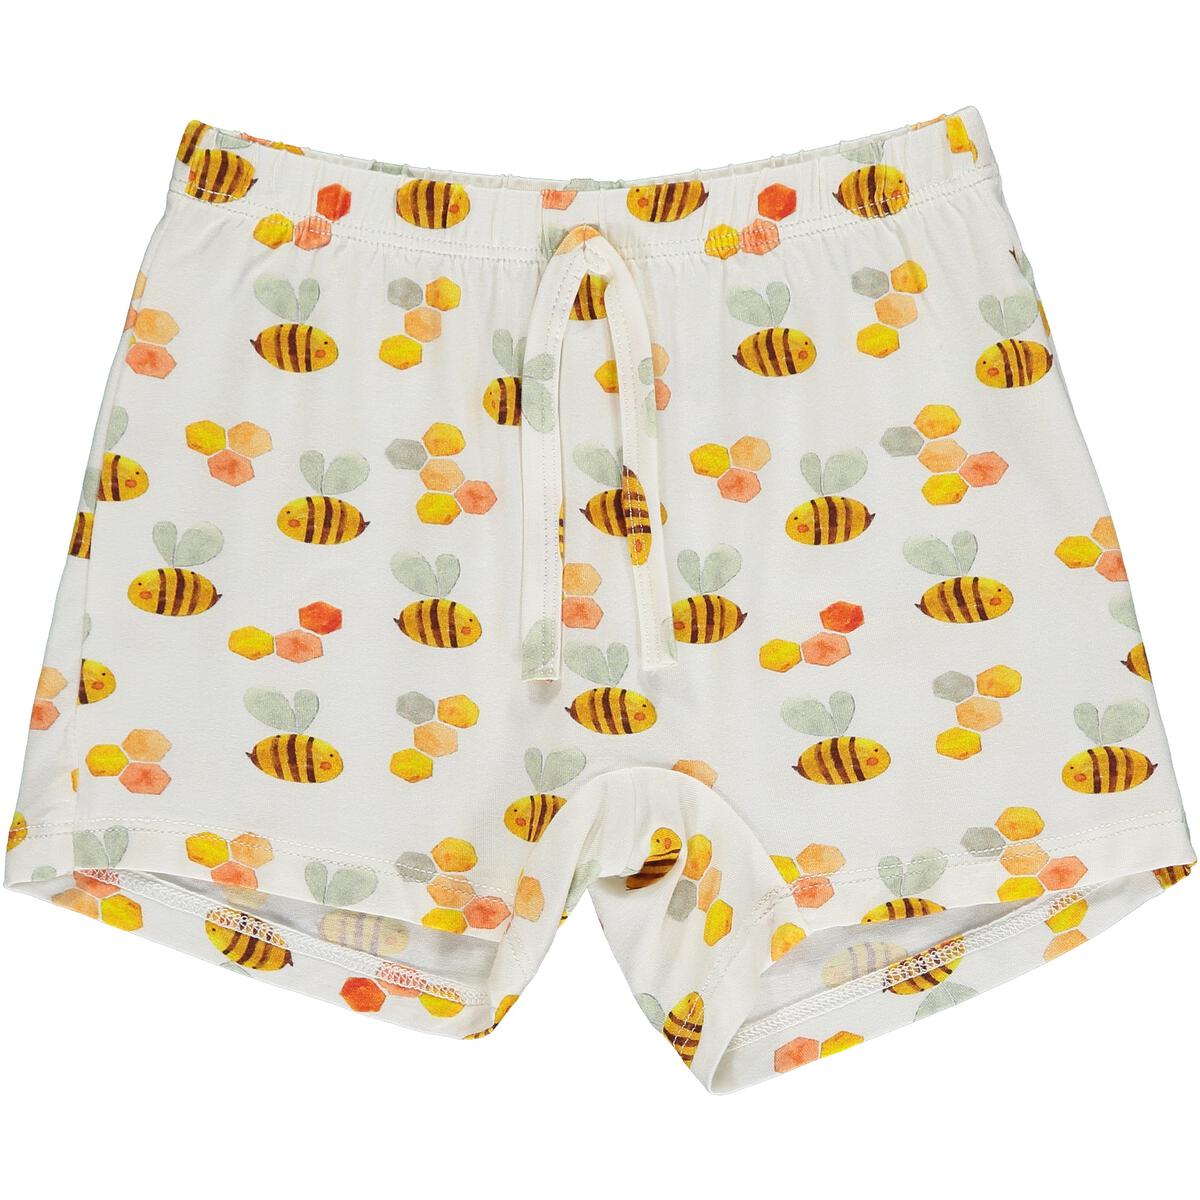 Shorts - Bumbling Bees